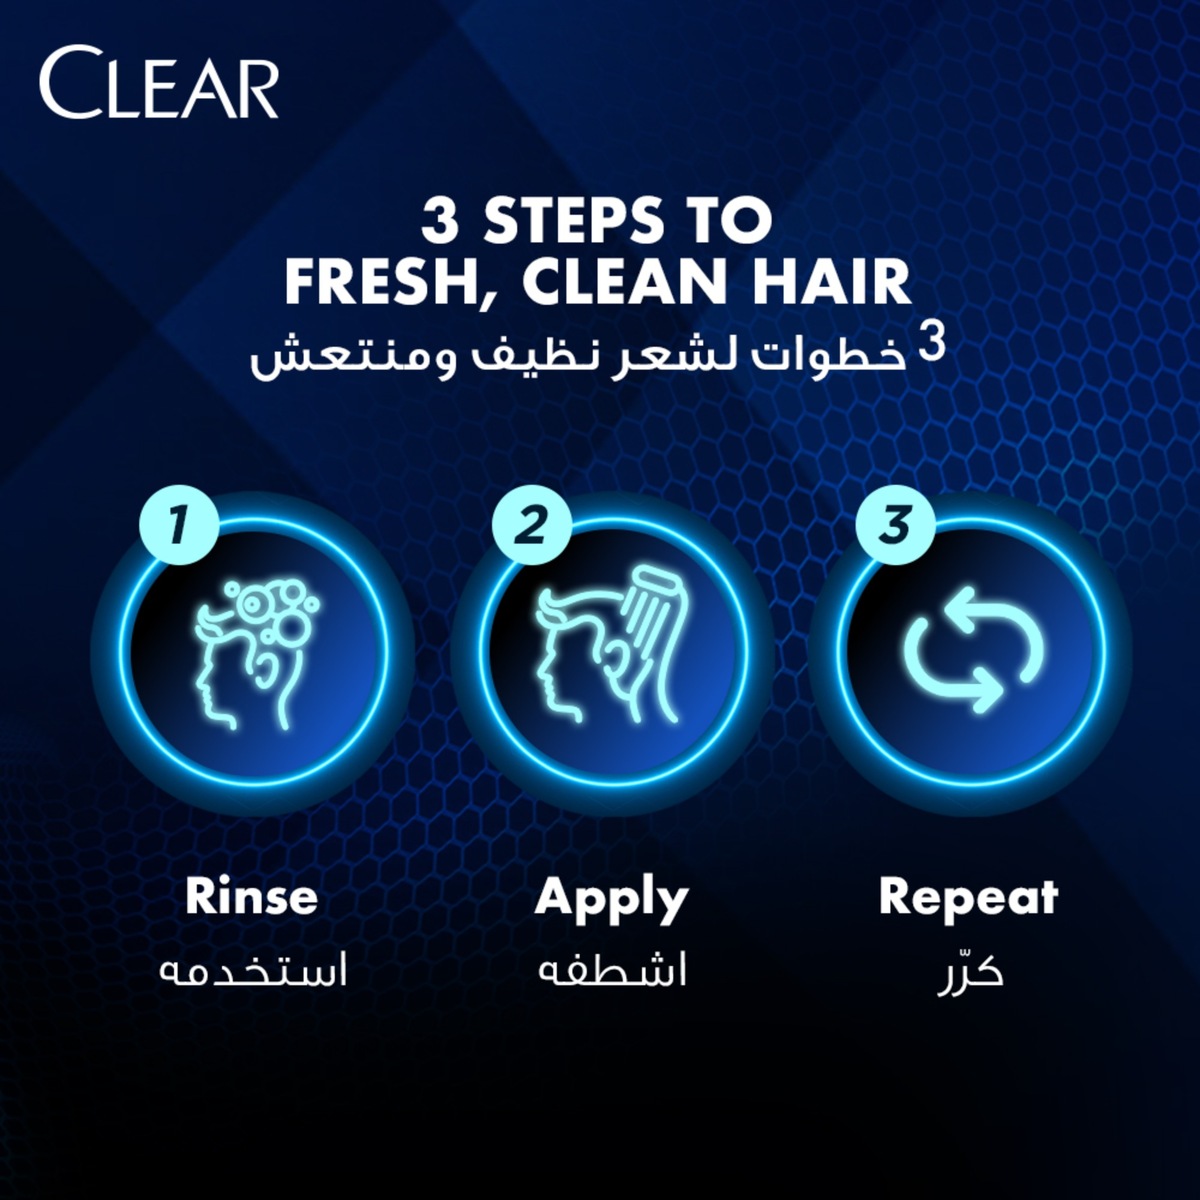 Clear Men's Hair Fall Defense Anti-Dandruff Shampoo 700ml